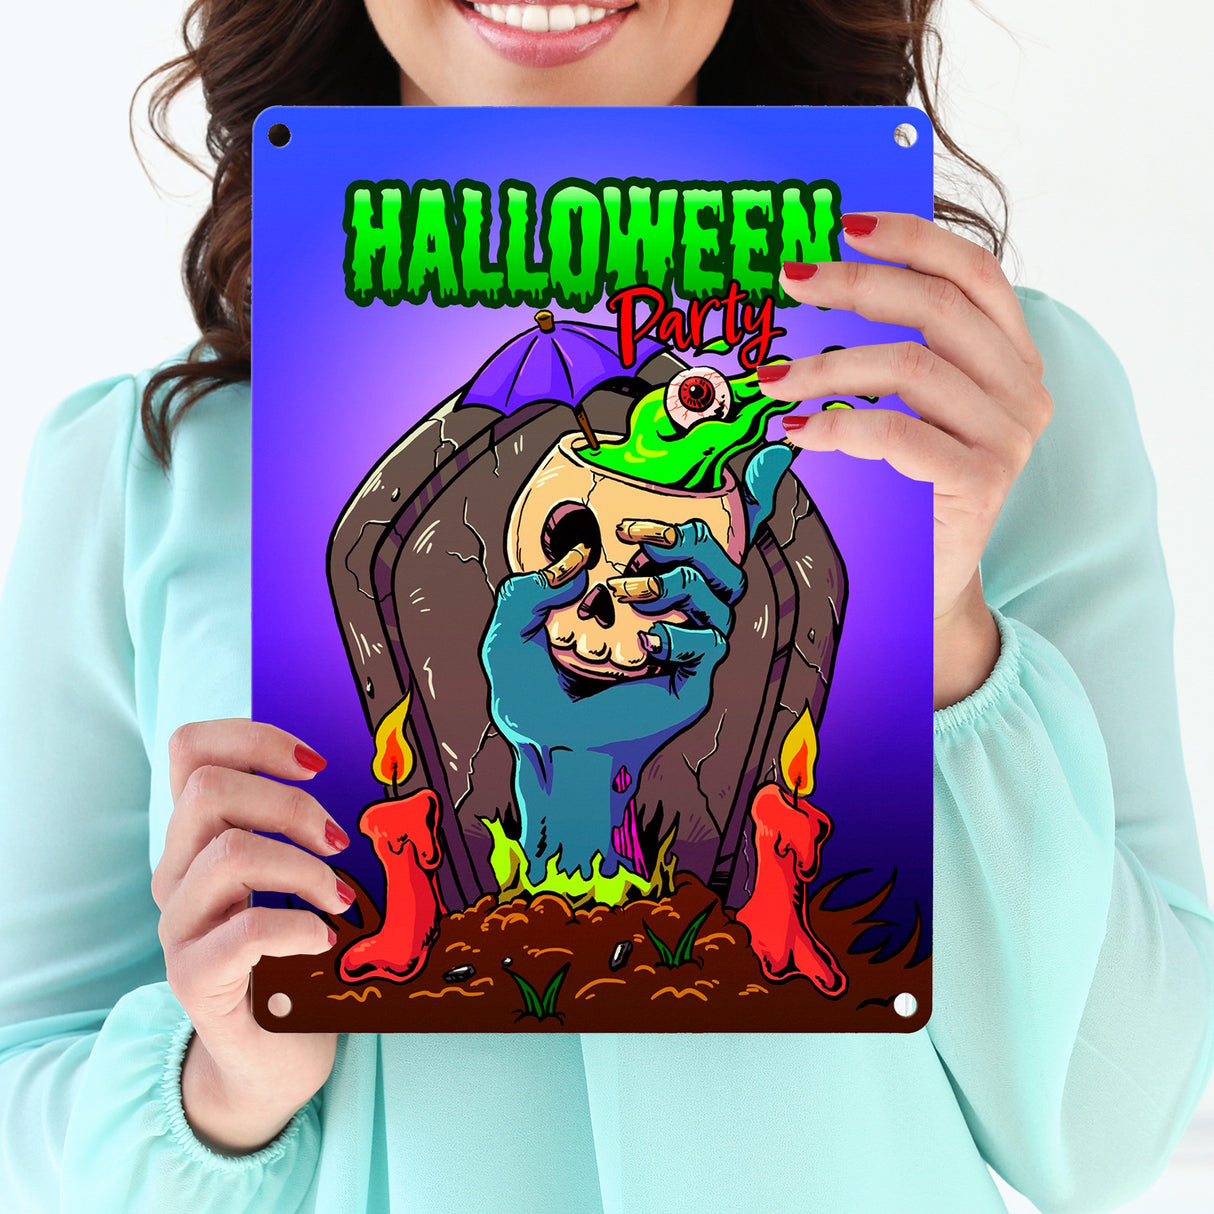 Metallschild mit Halloween Party Motiv und schauriger Zombiehand